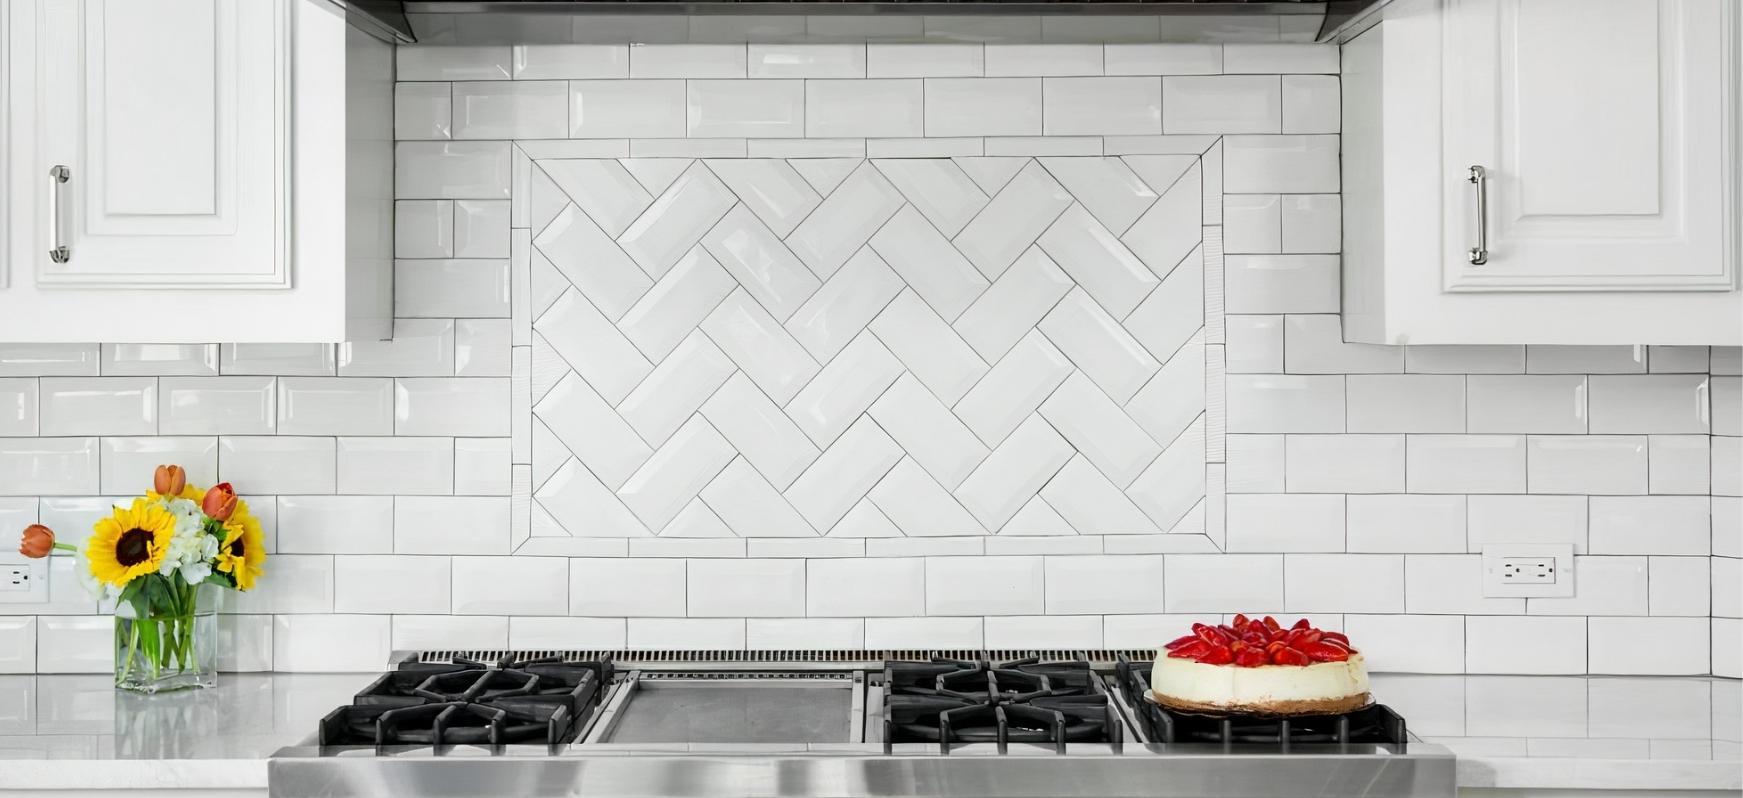 Countertop Backsplash using White Subway Tiles